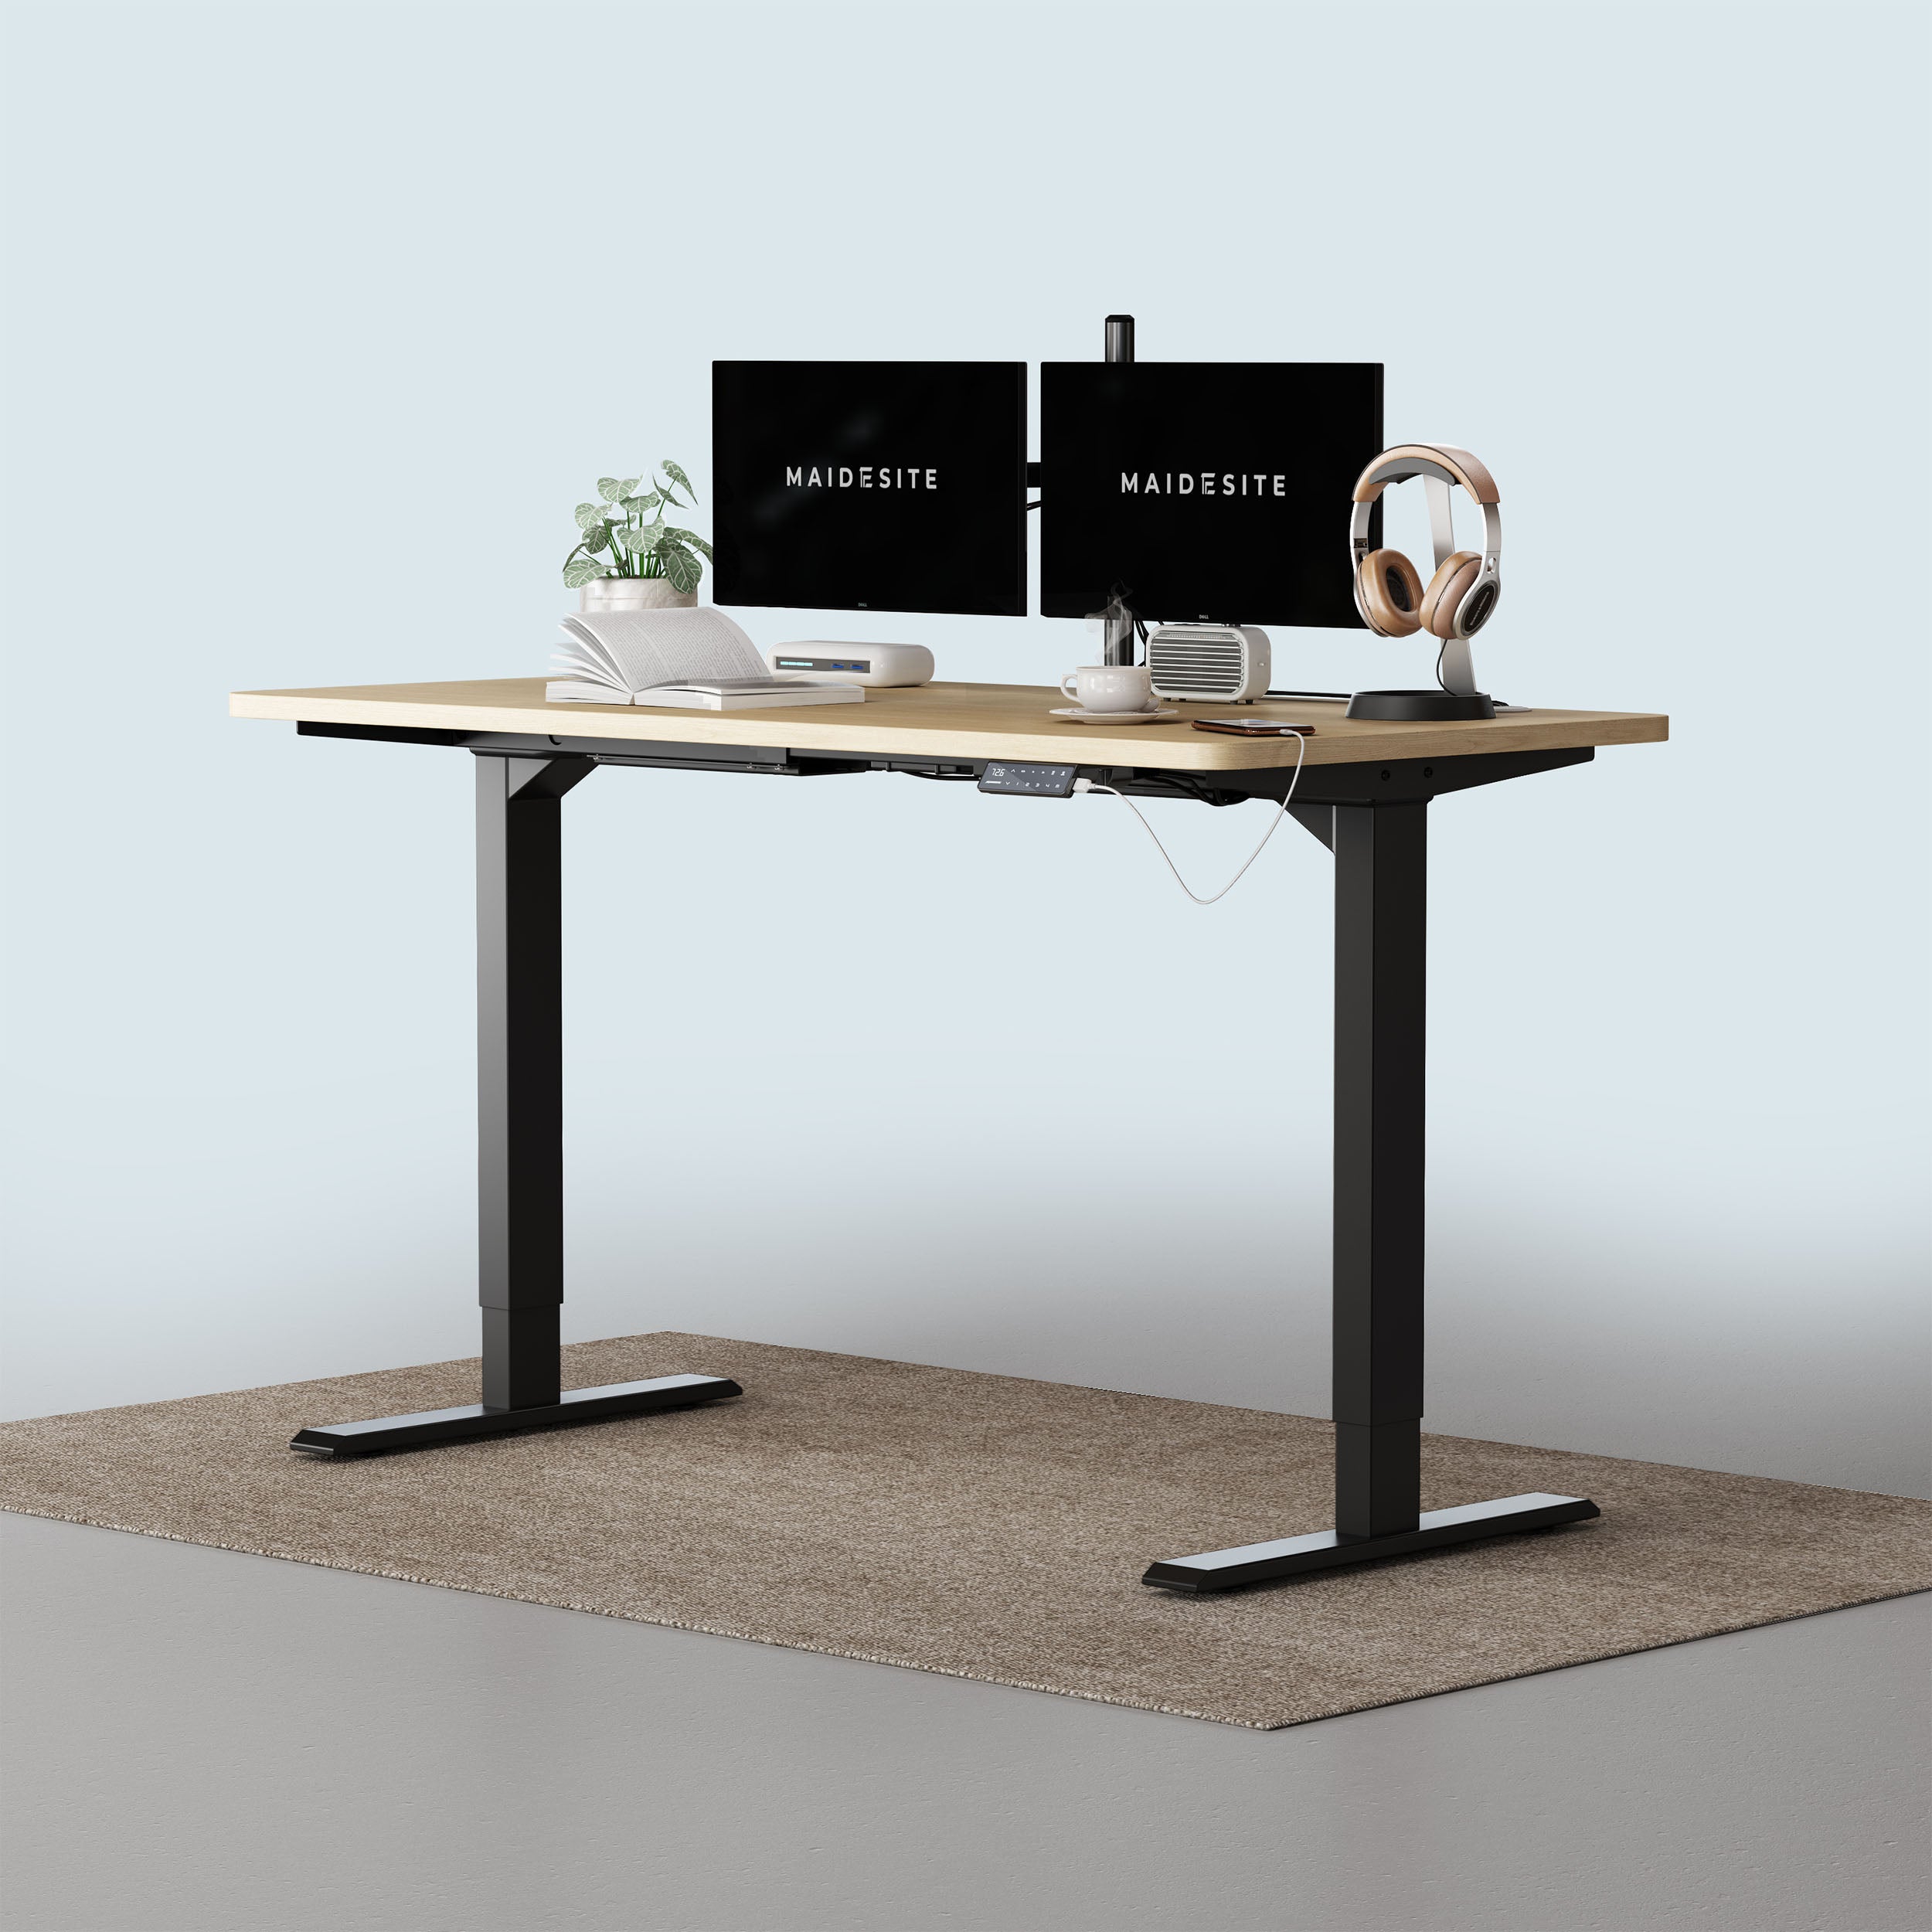 Maidesite T2 Pro-escritorio elevable regulable en altura con capacidad para 2 monitores